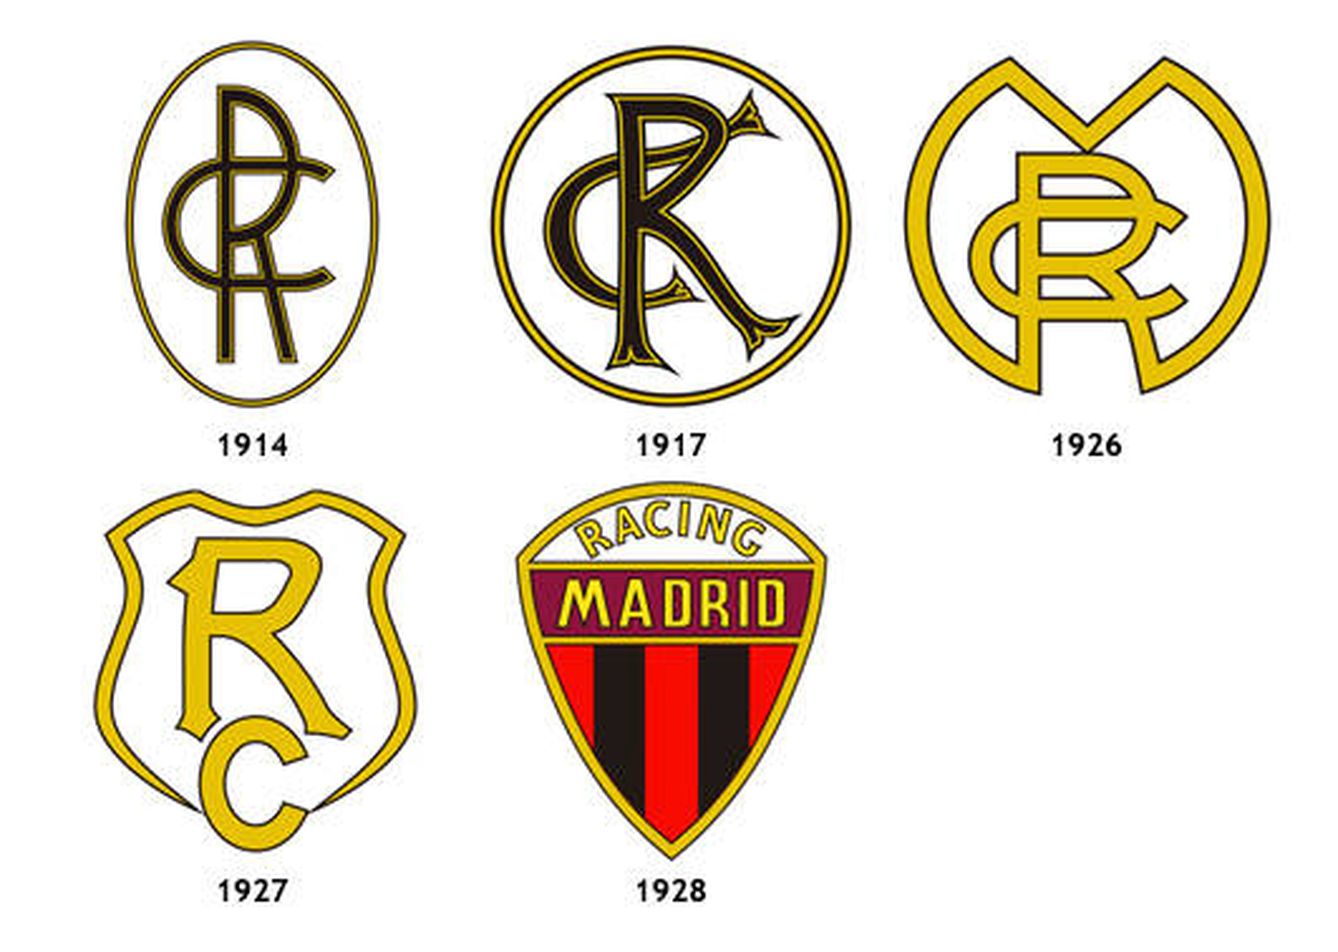 Escudos históricos del Racing de Madrid. (Futbolteca)